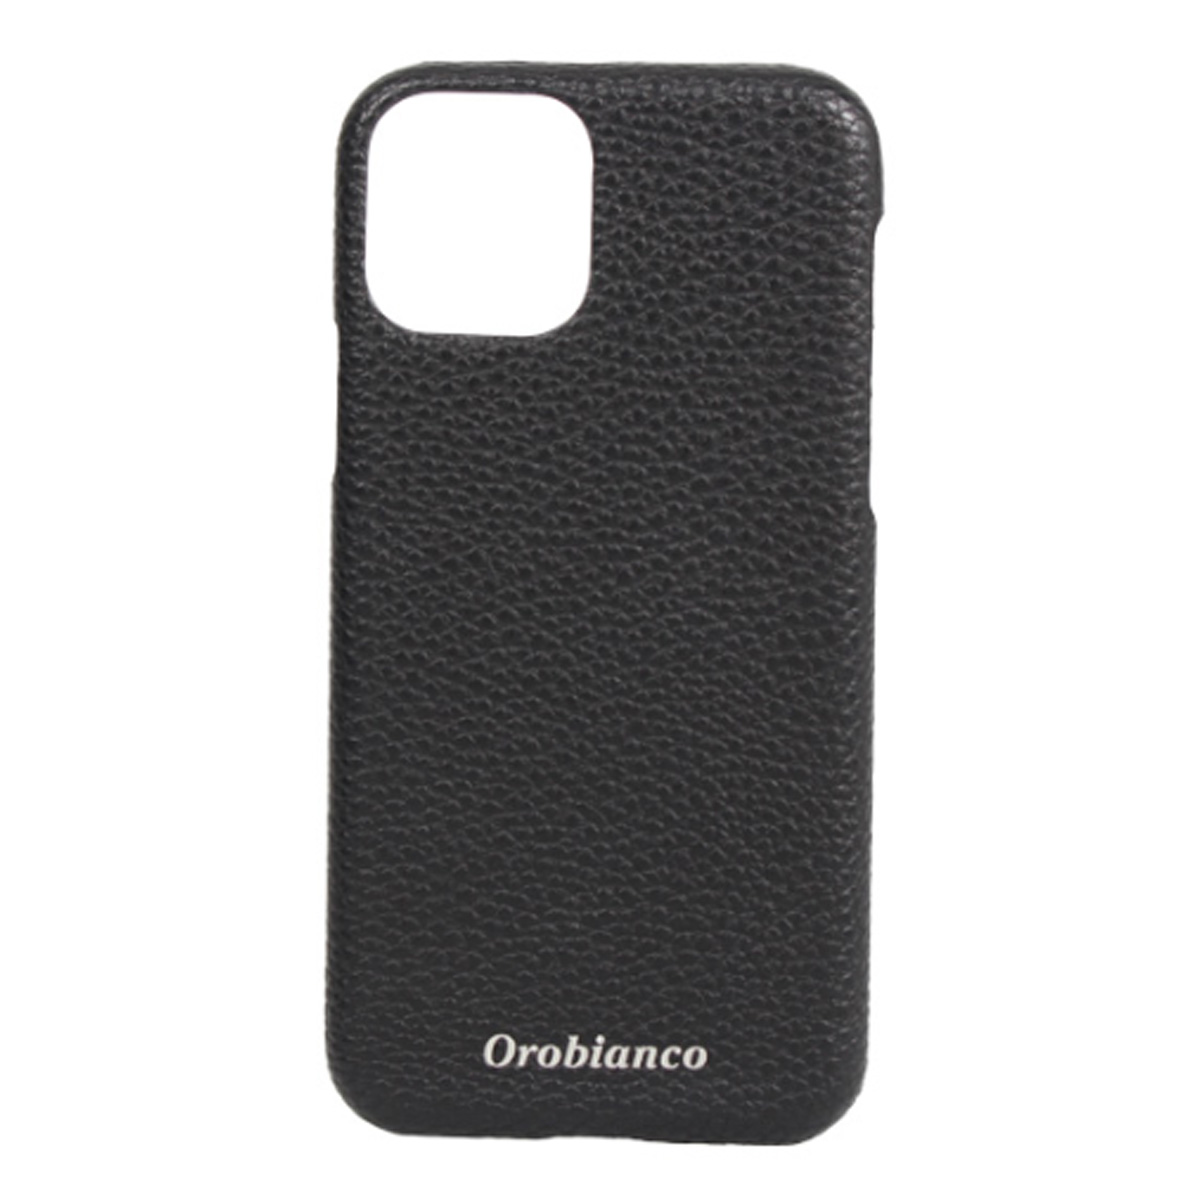 オロビアンコ Orobianco iPhone 11 ケース スマホ 携帯 アイフォン メンズ レデ...